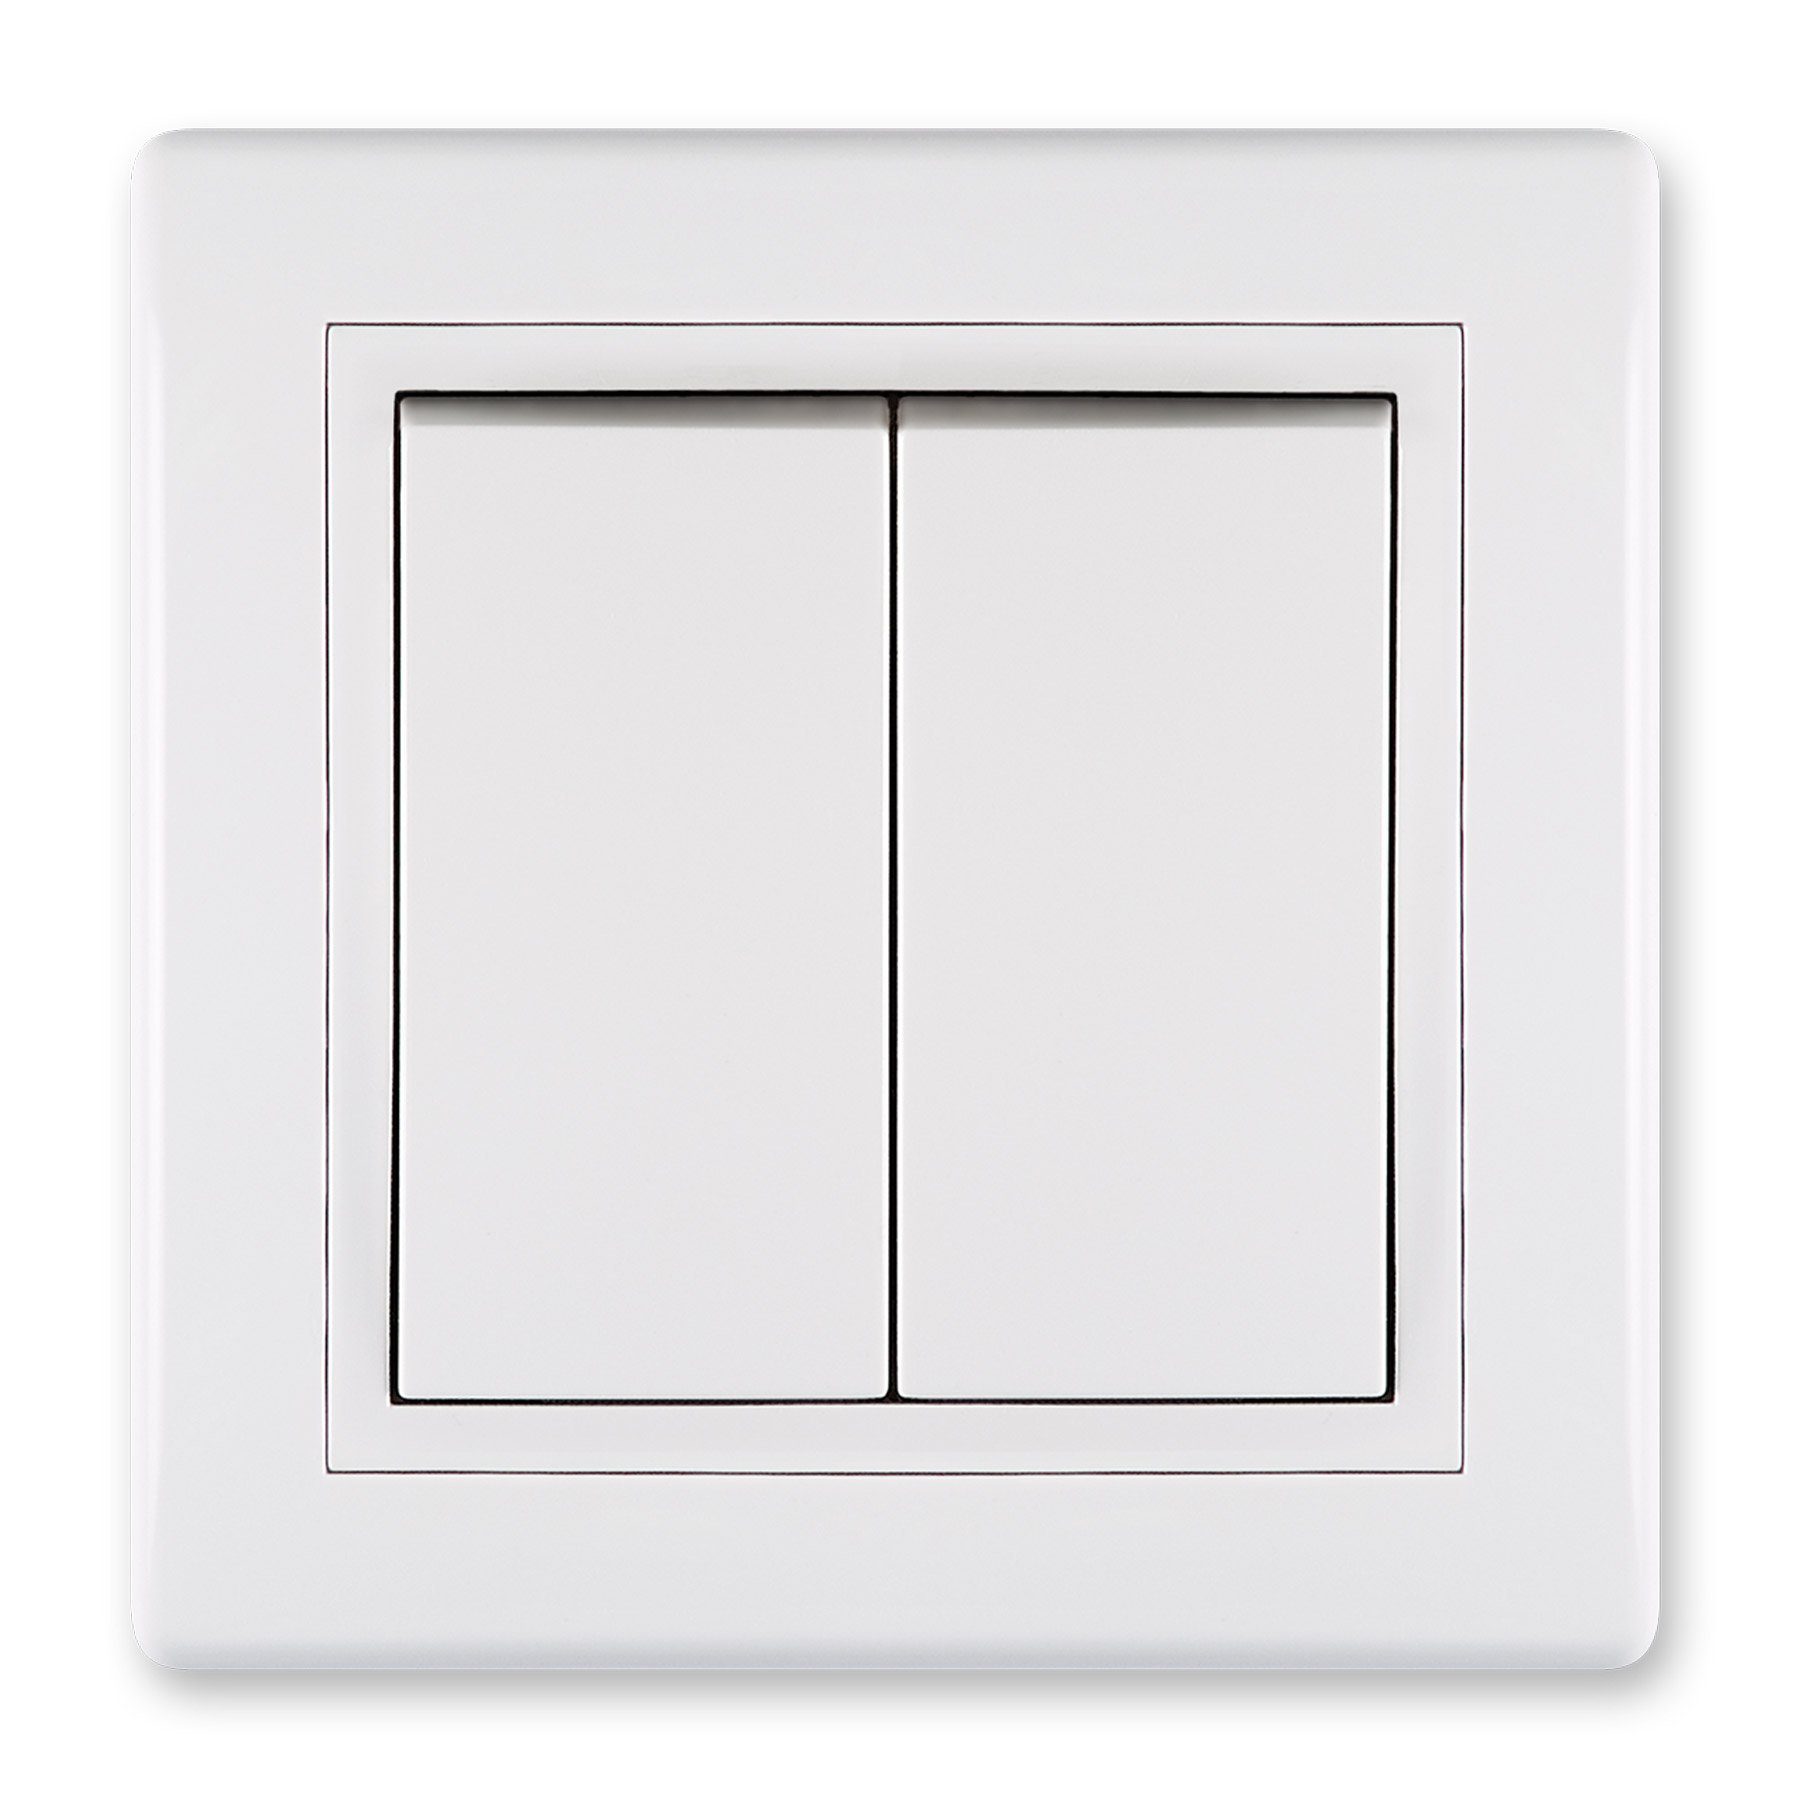 Aling Conel Lichtschalter Prestige Line Unterputz-Schalter ohne Glimmlampe Weiß (Packung)